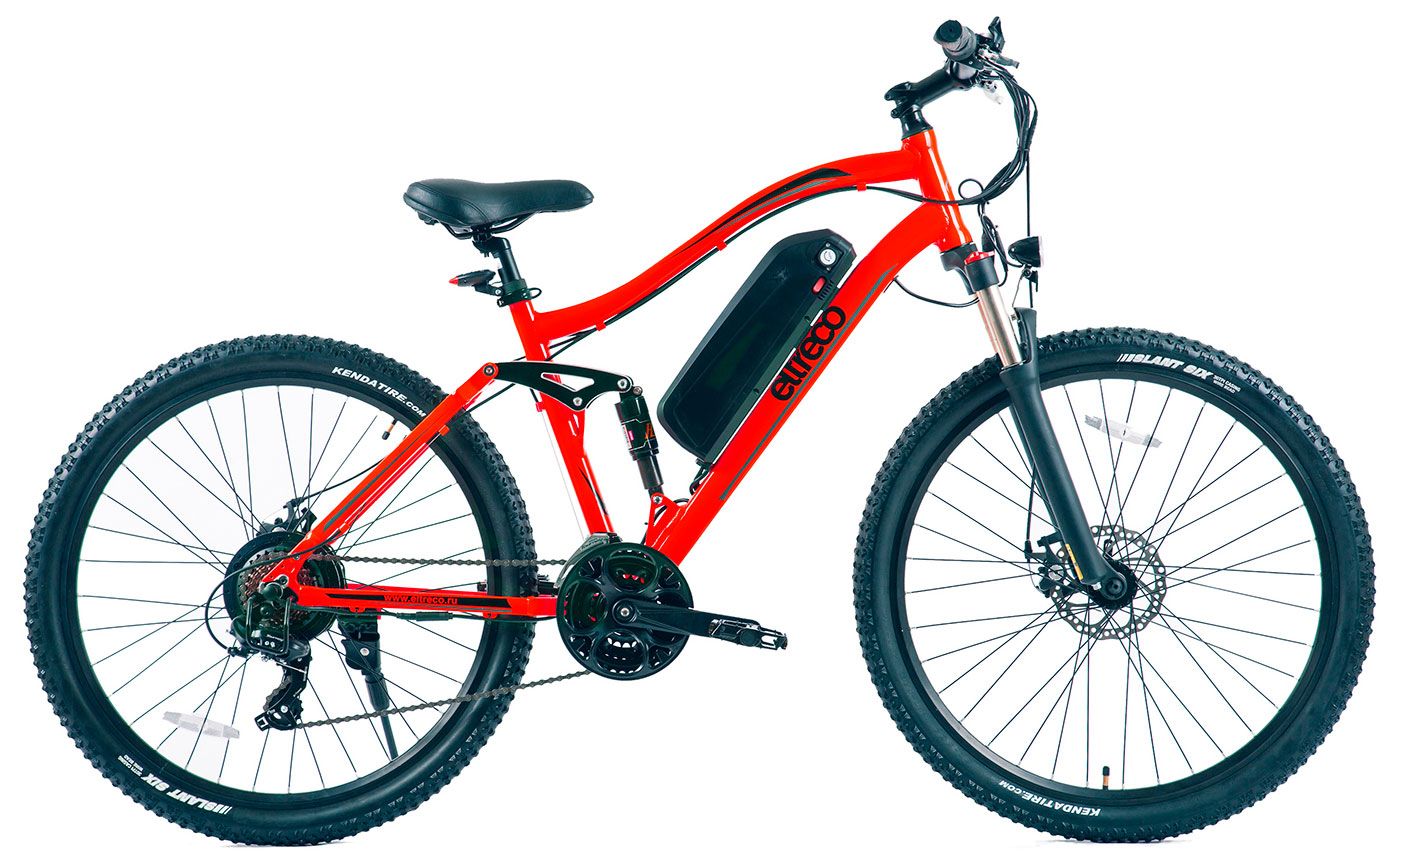  Отзывы о Горном велосипеде Eltreco FS900 26 2018